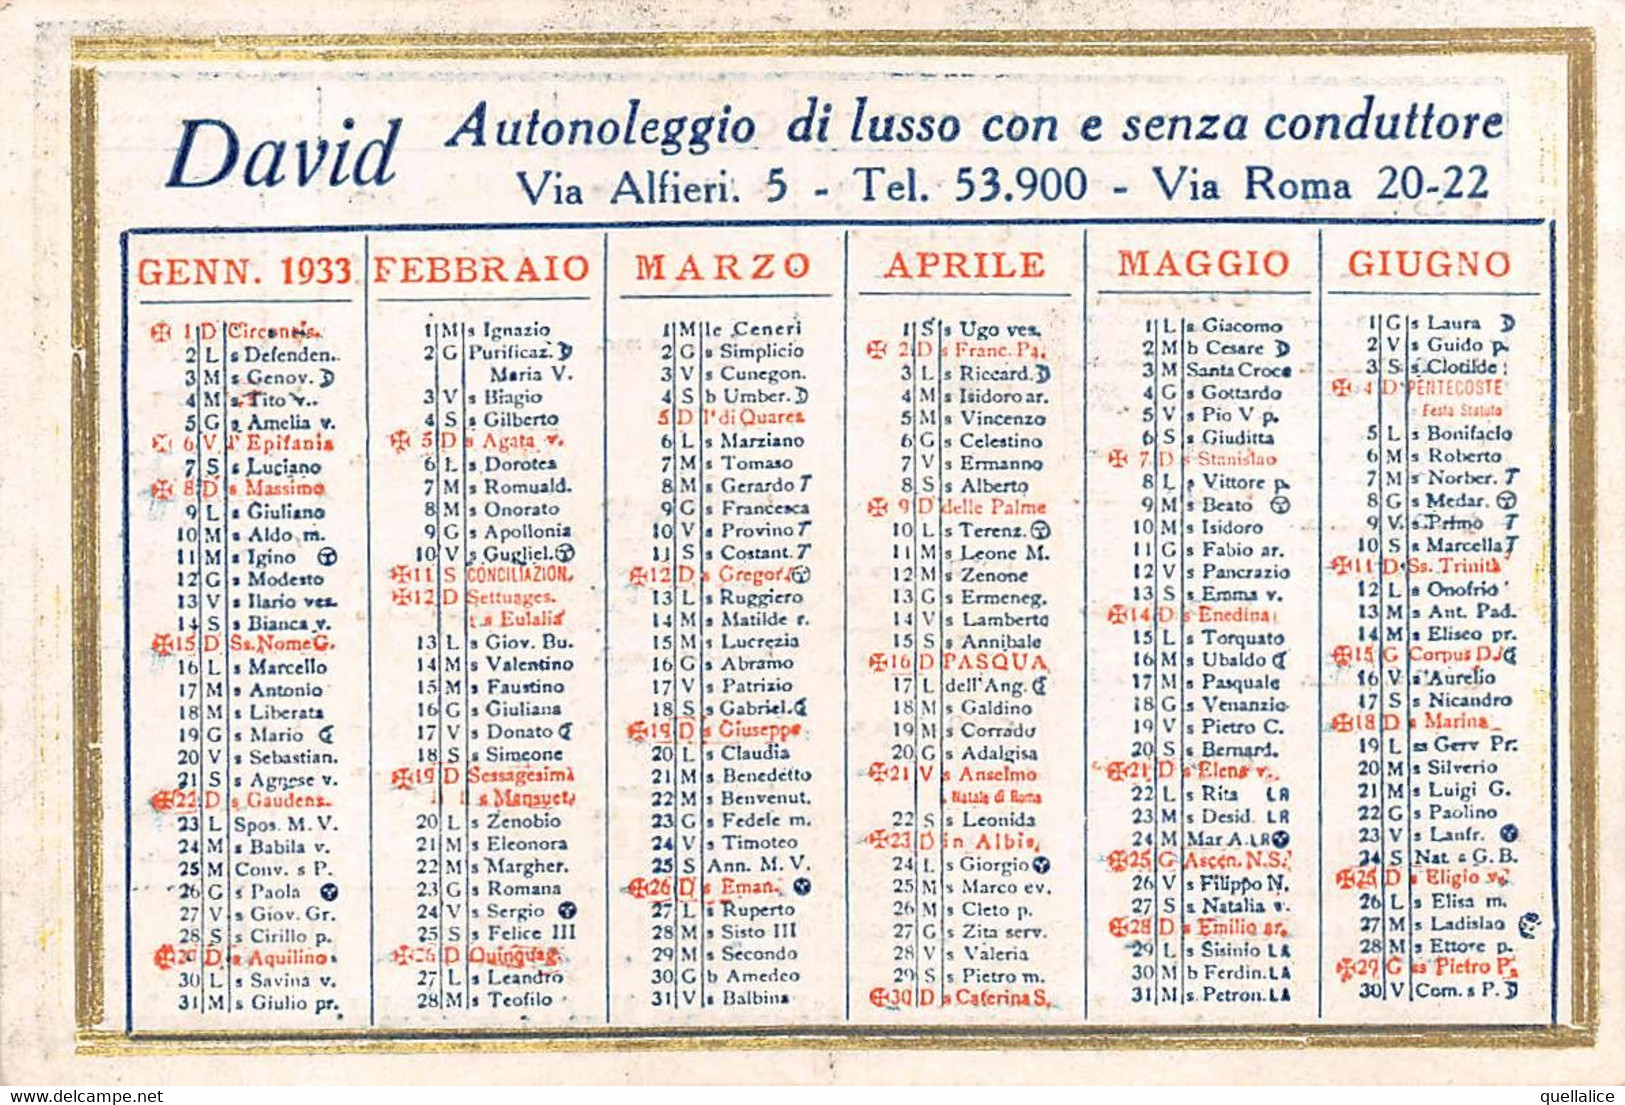 02089 "TORINO - DAVID AUTONOLEGGIO DI LUSSO CON E SENZA CONDUTTORE - CALENDARIETTO 1933" ORIG - Grossformat : 1921-40